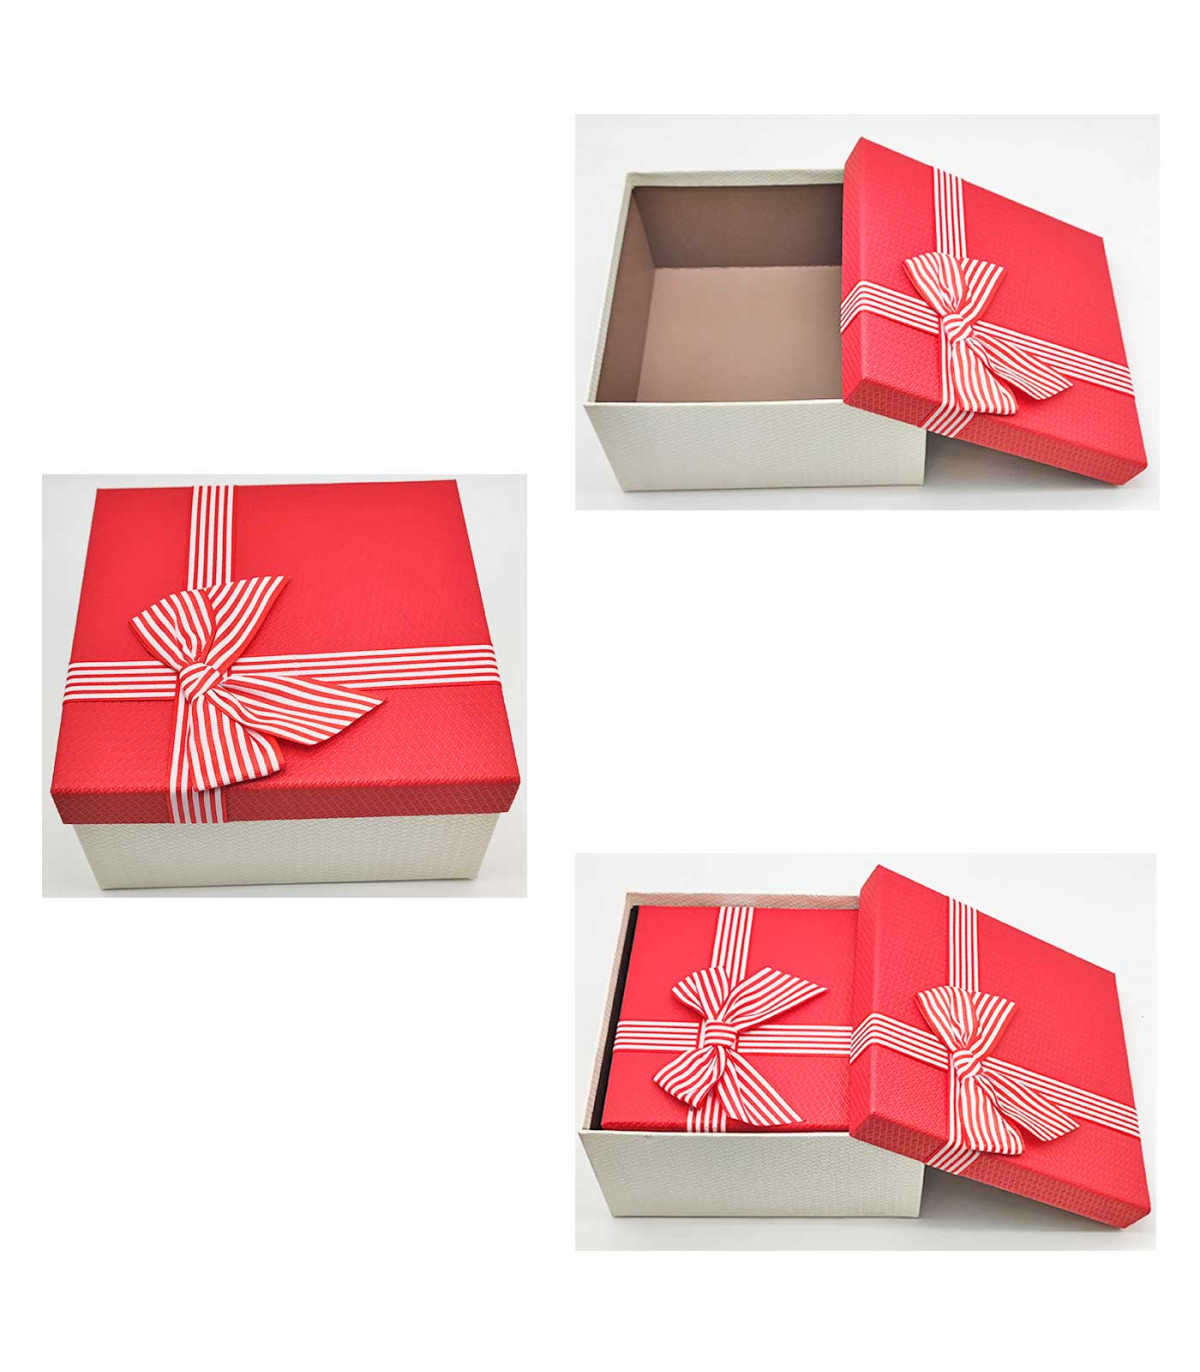 Set de 3 cajas de regalo cuadradas con lazo, 3 tamaños distintos